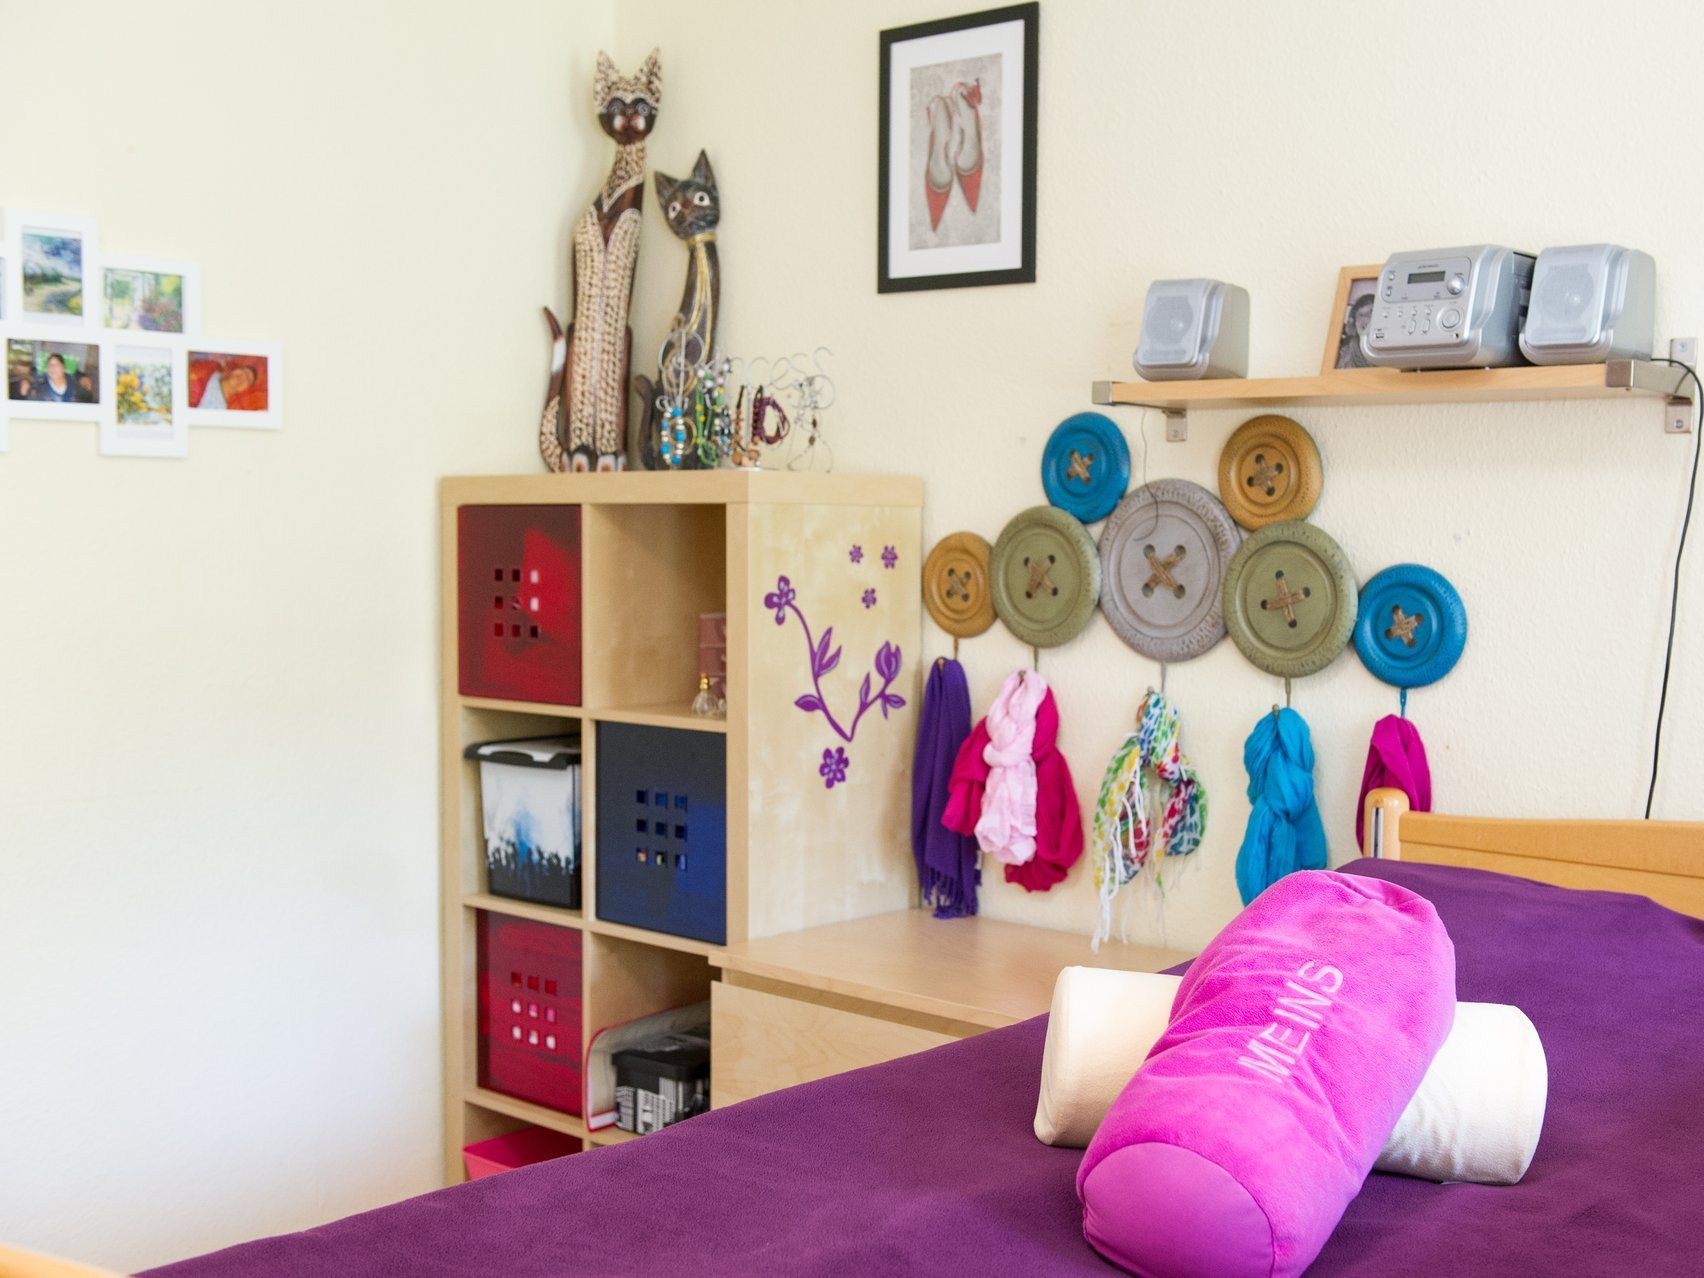 Zimmer mit Bett, vielen Bildern und Schränken - alles sehr lila und pink